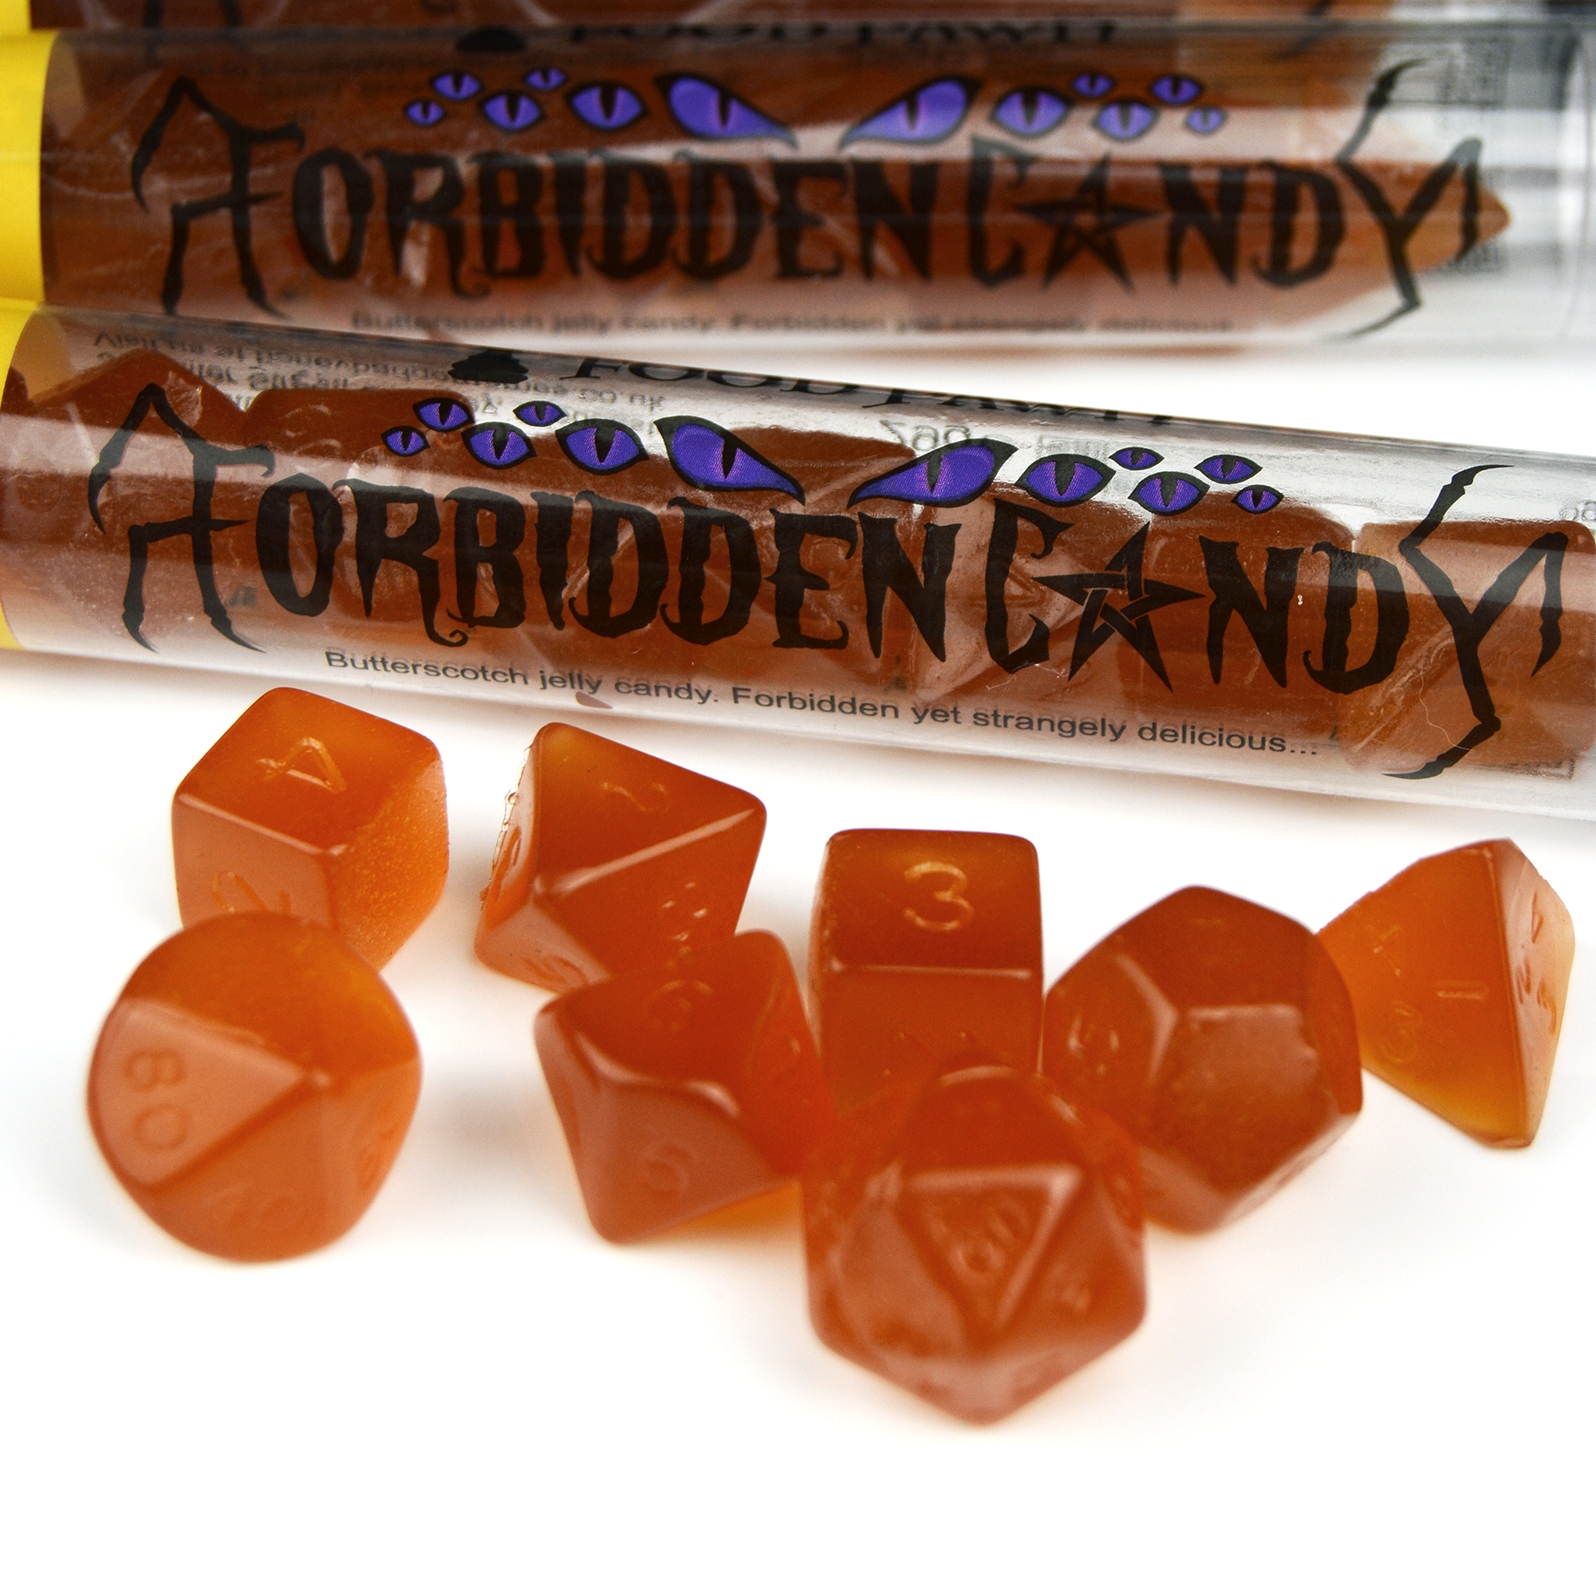 Forbidden Candy